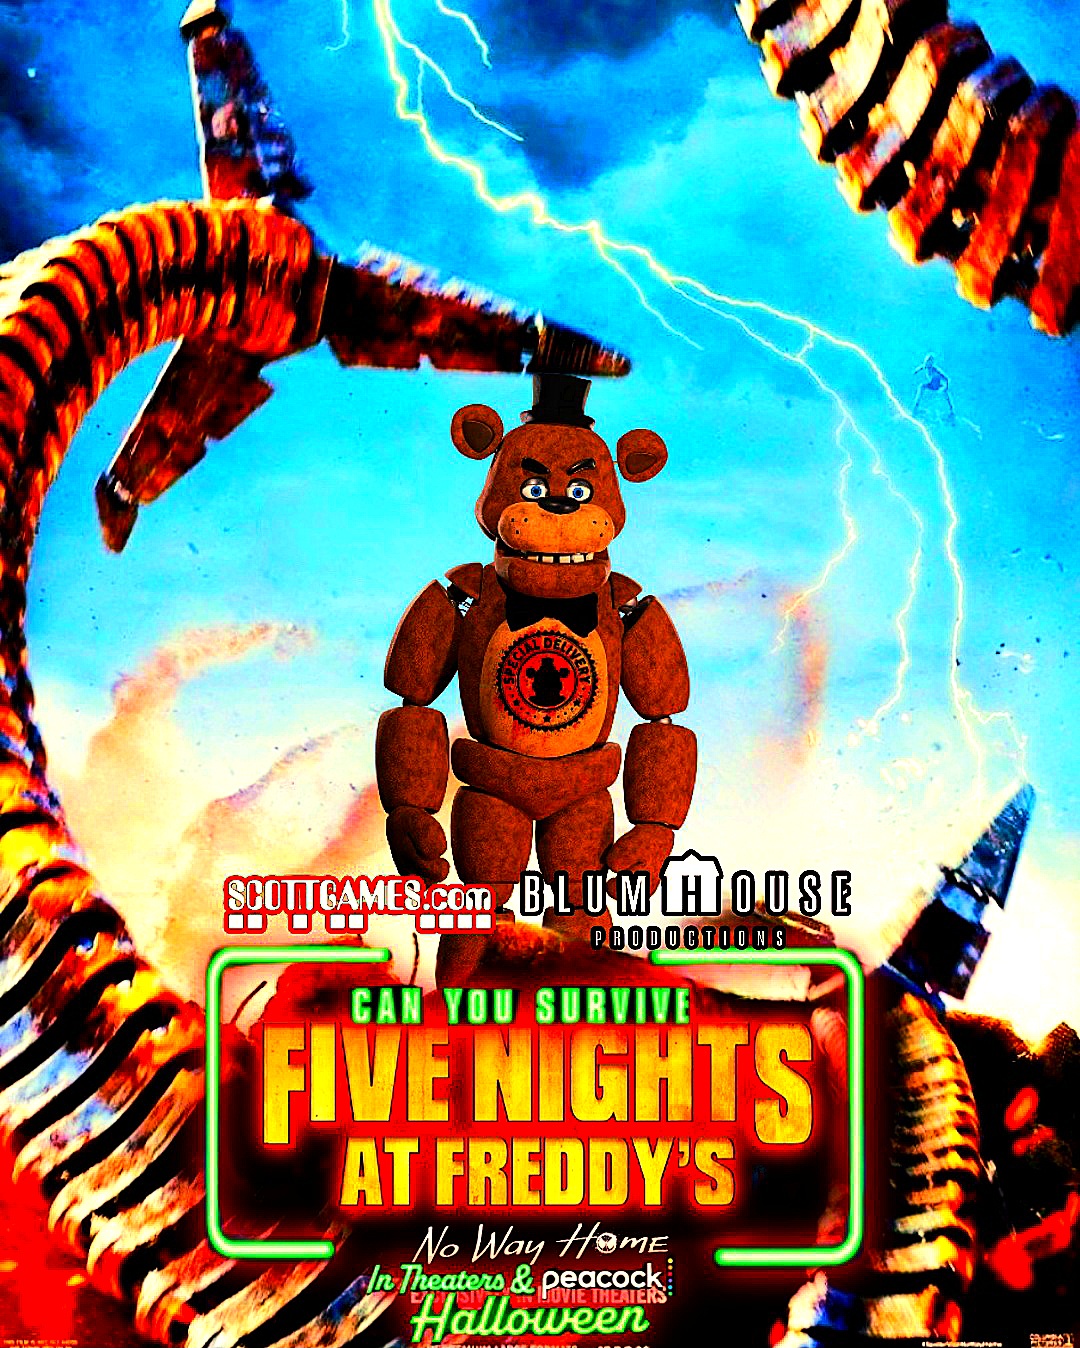 Fnaf 2 movie poster by marvelous554 on DeviantArt